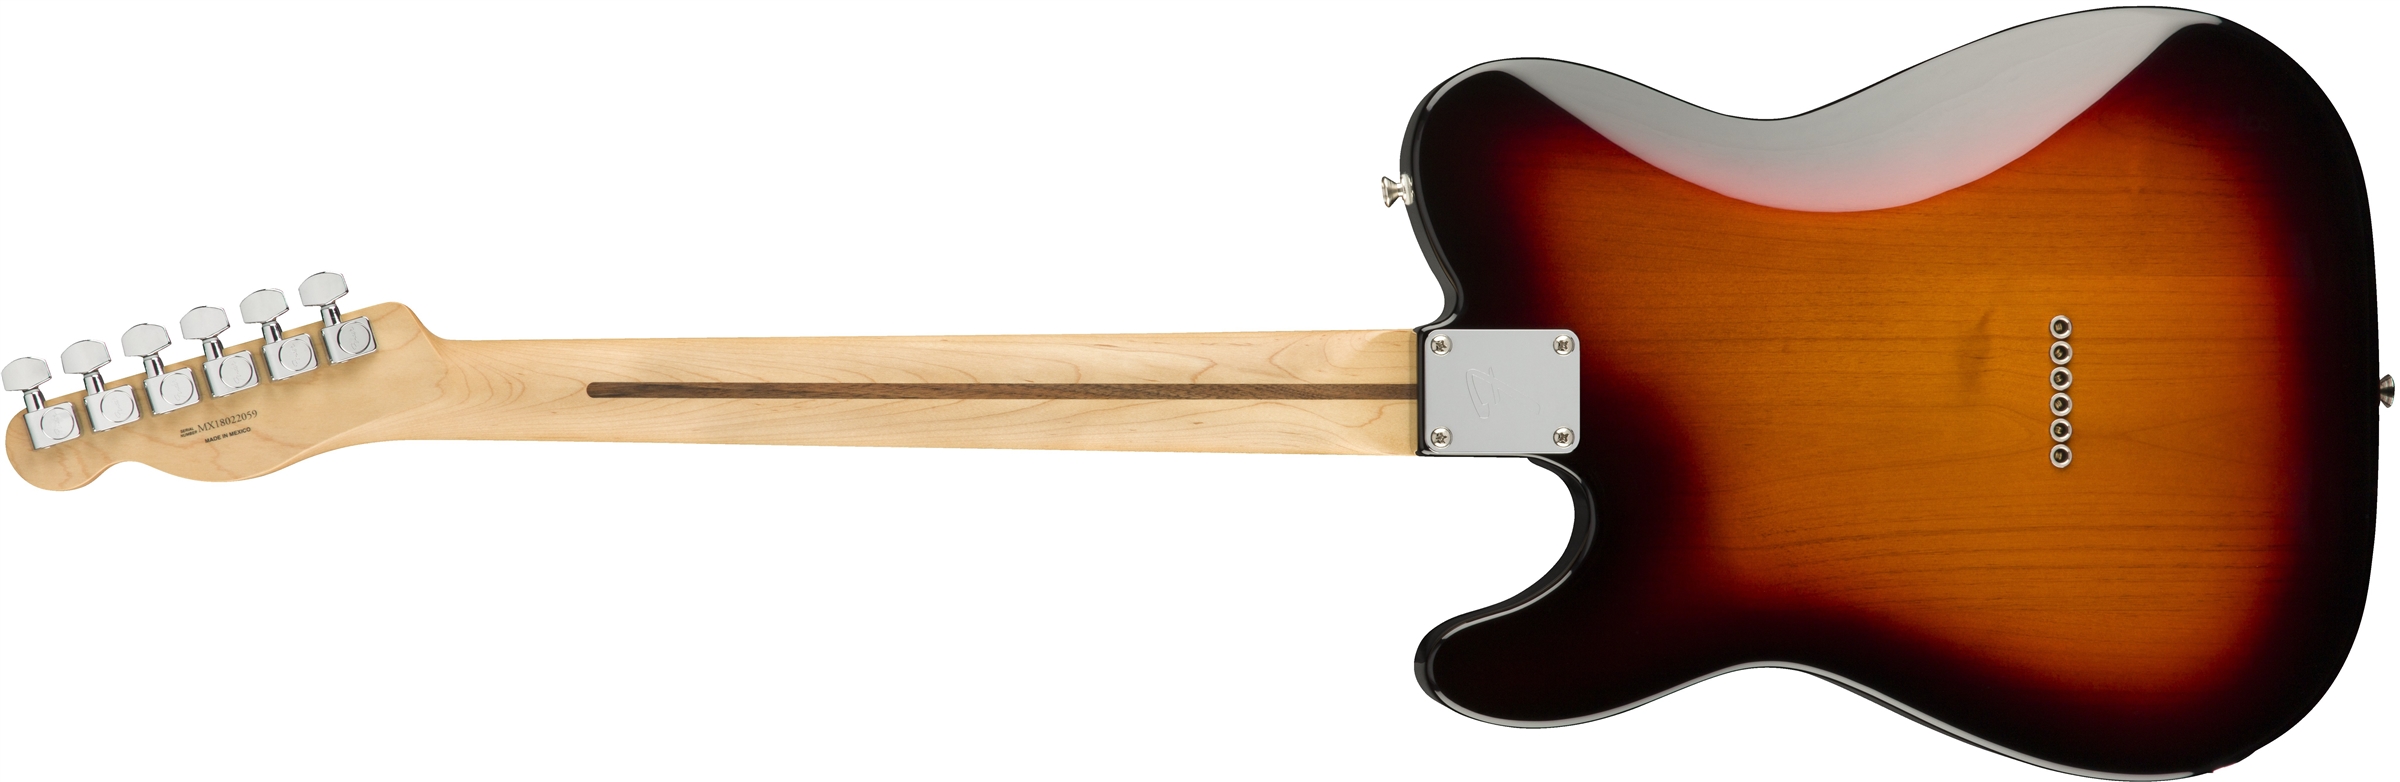 Fender Tele Player Mex Hh Pf - 3-color Sunburst - Guitare Électrique Forme Tel - Variation 1